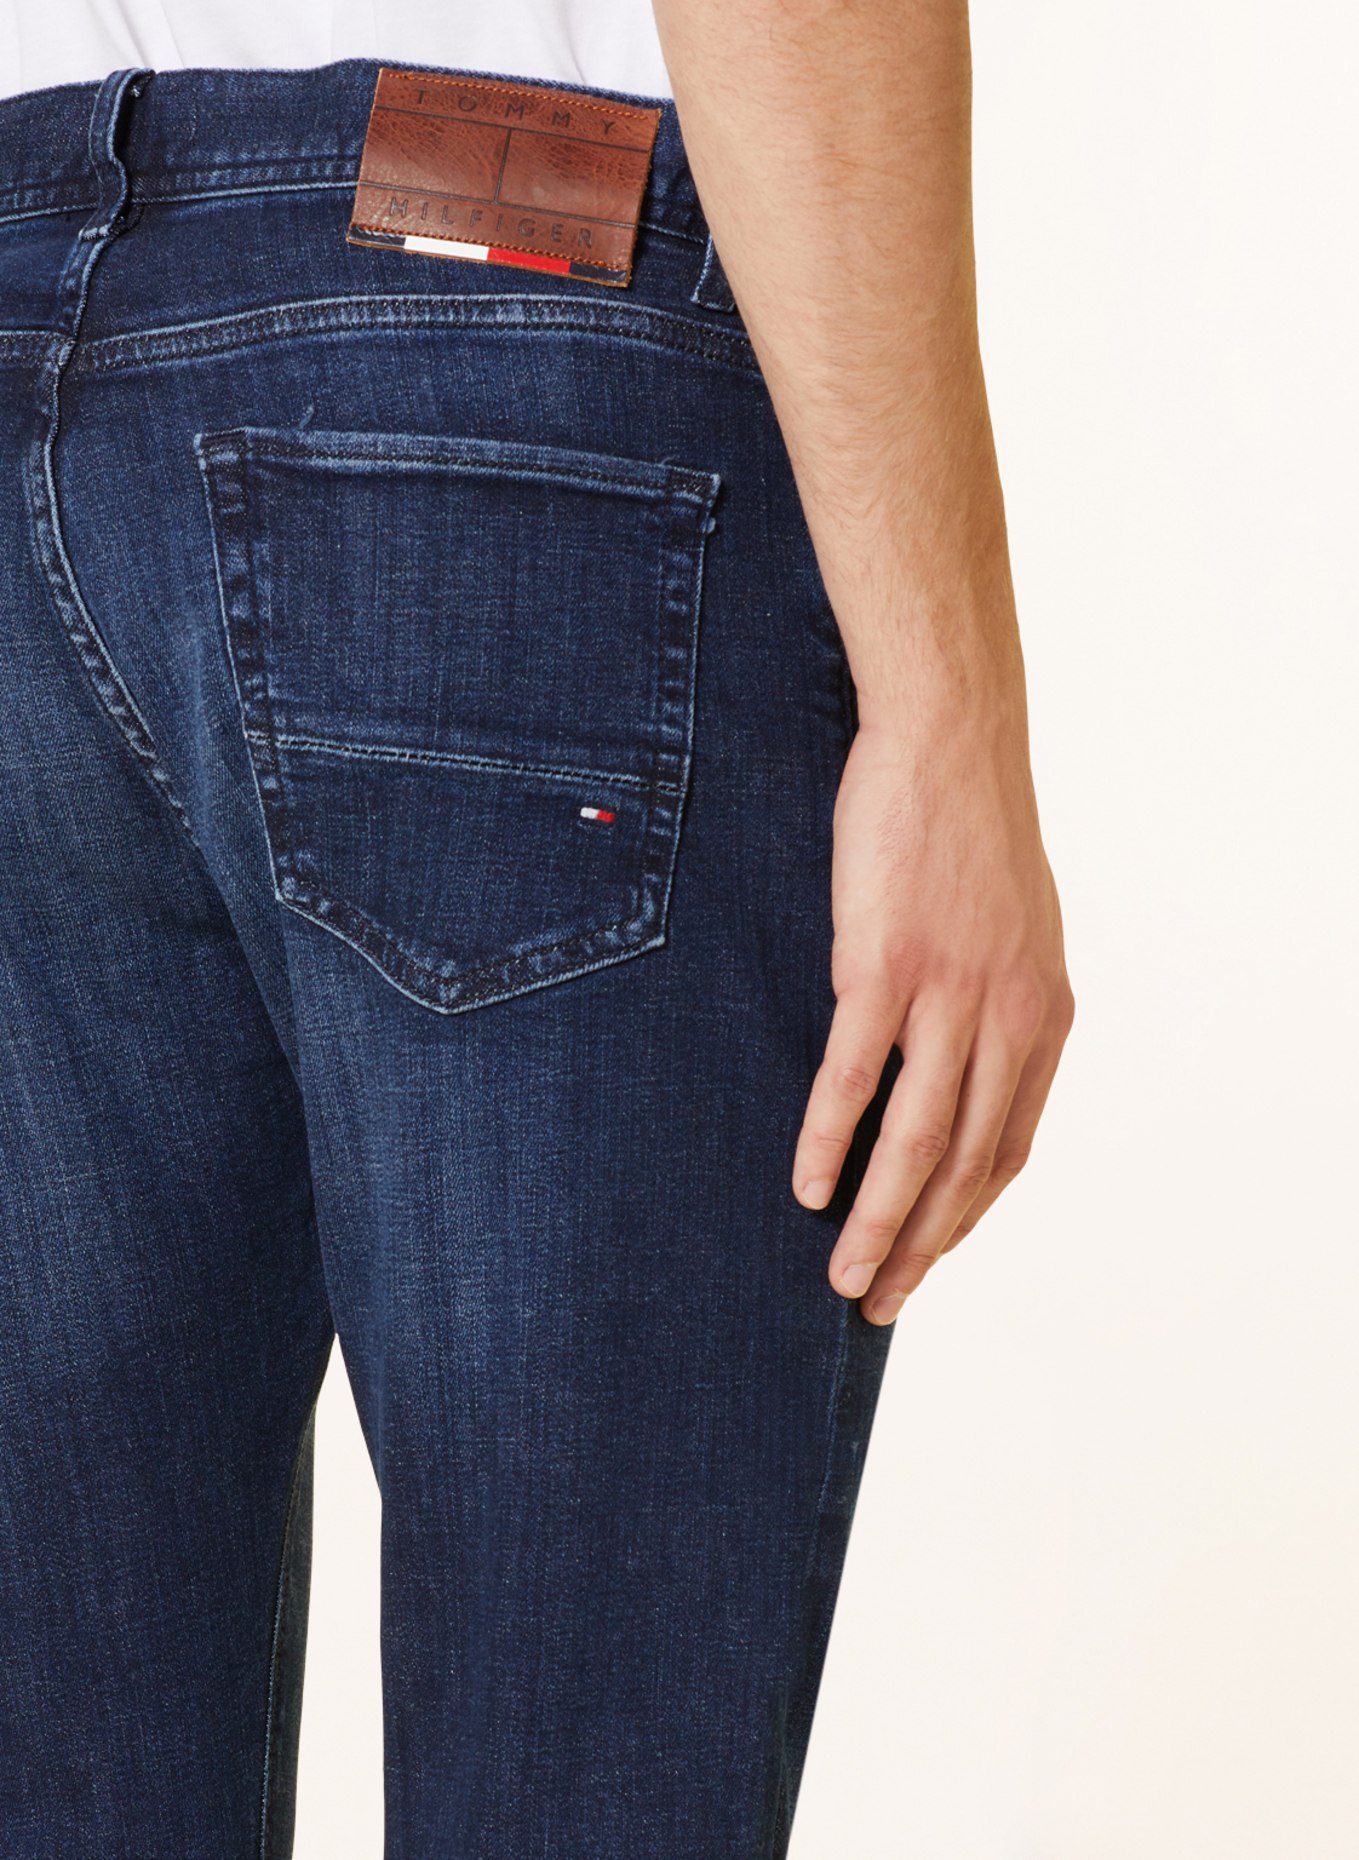 TOMMY HILFIGER Jeans CORE BLEECKER Slim Fit, Farbe: 1BS Bridger Indigo (Bild 5)